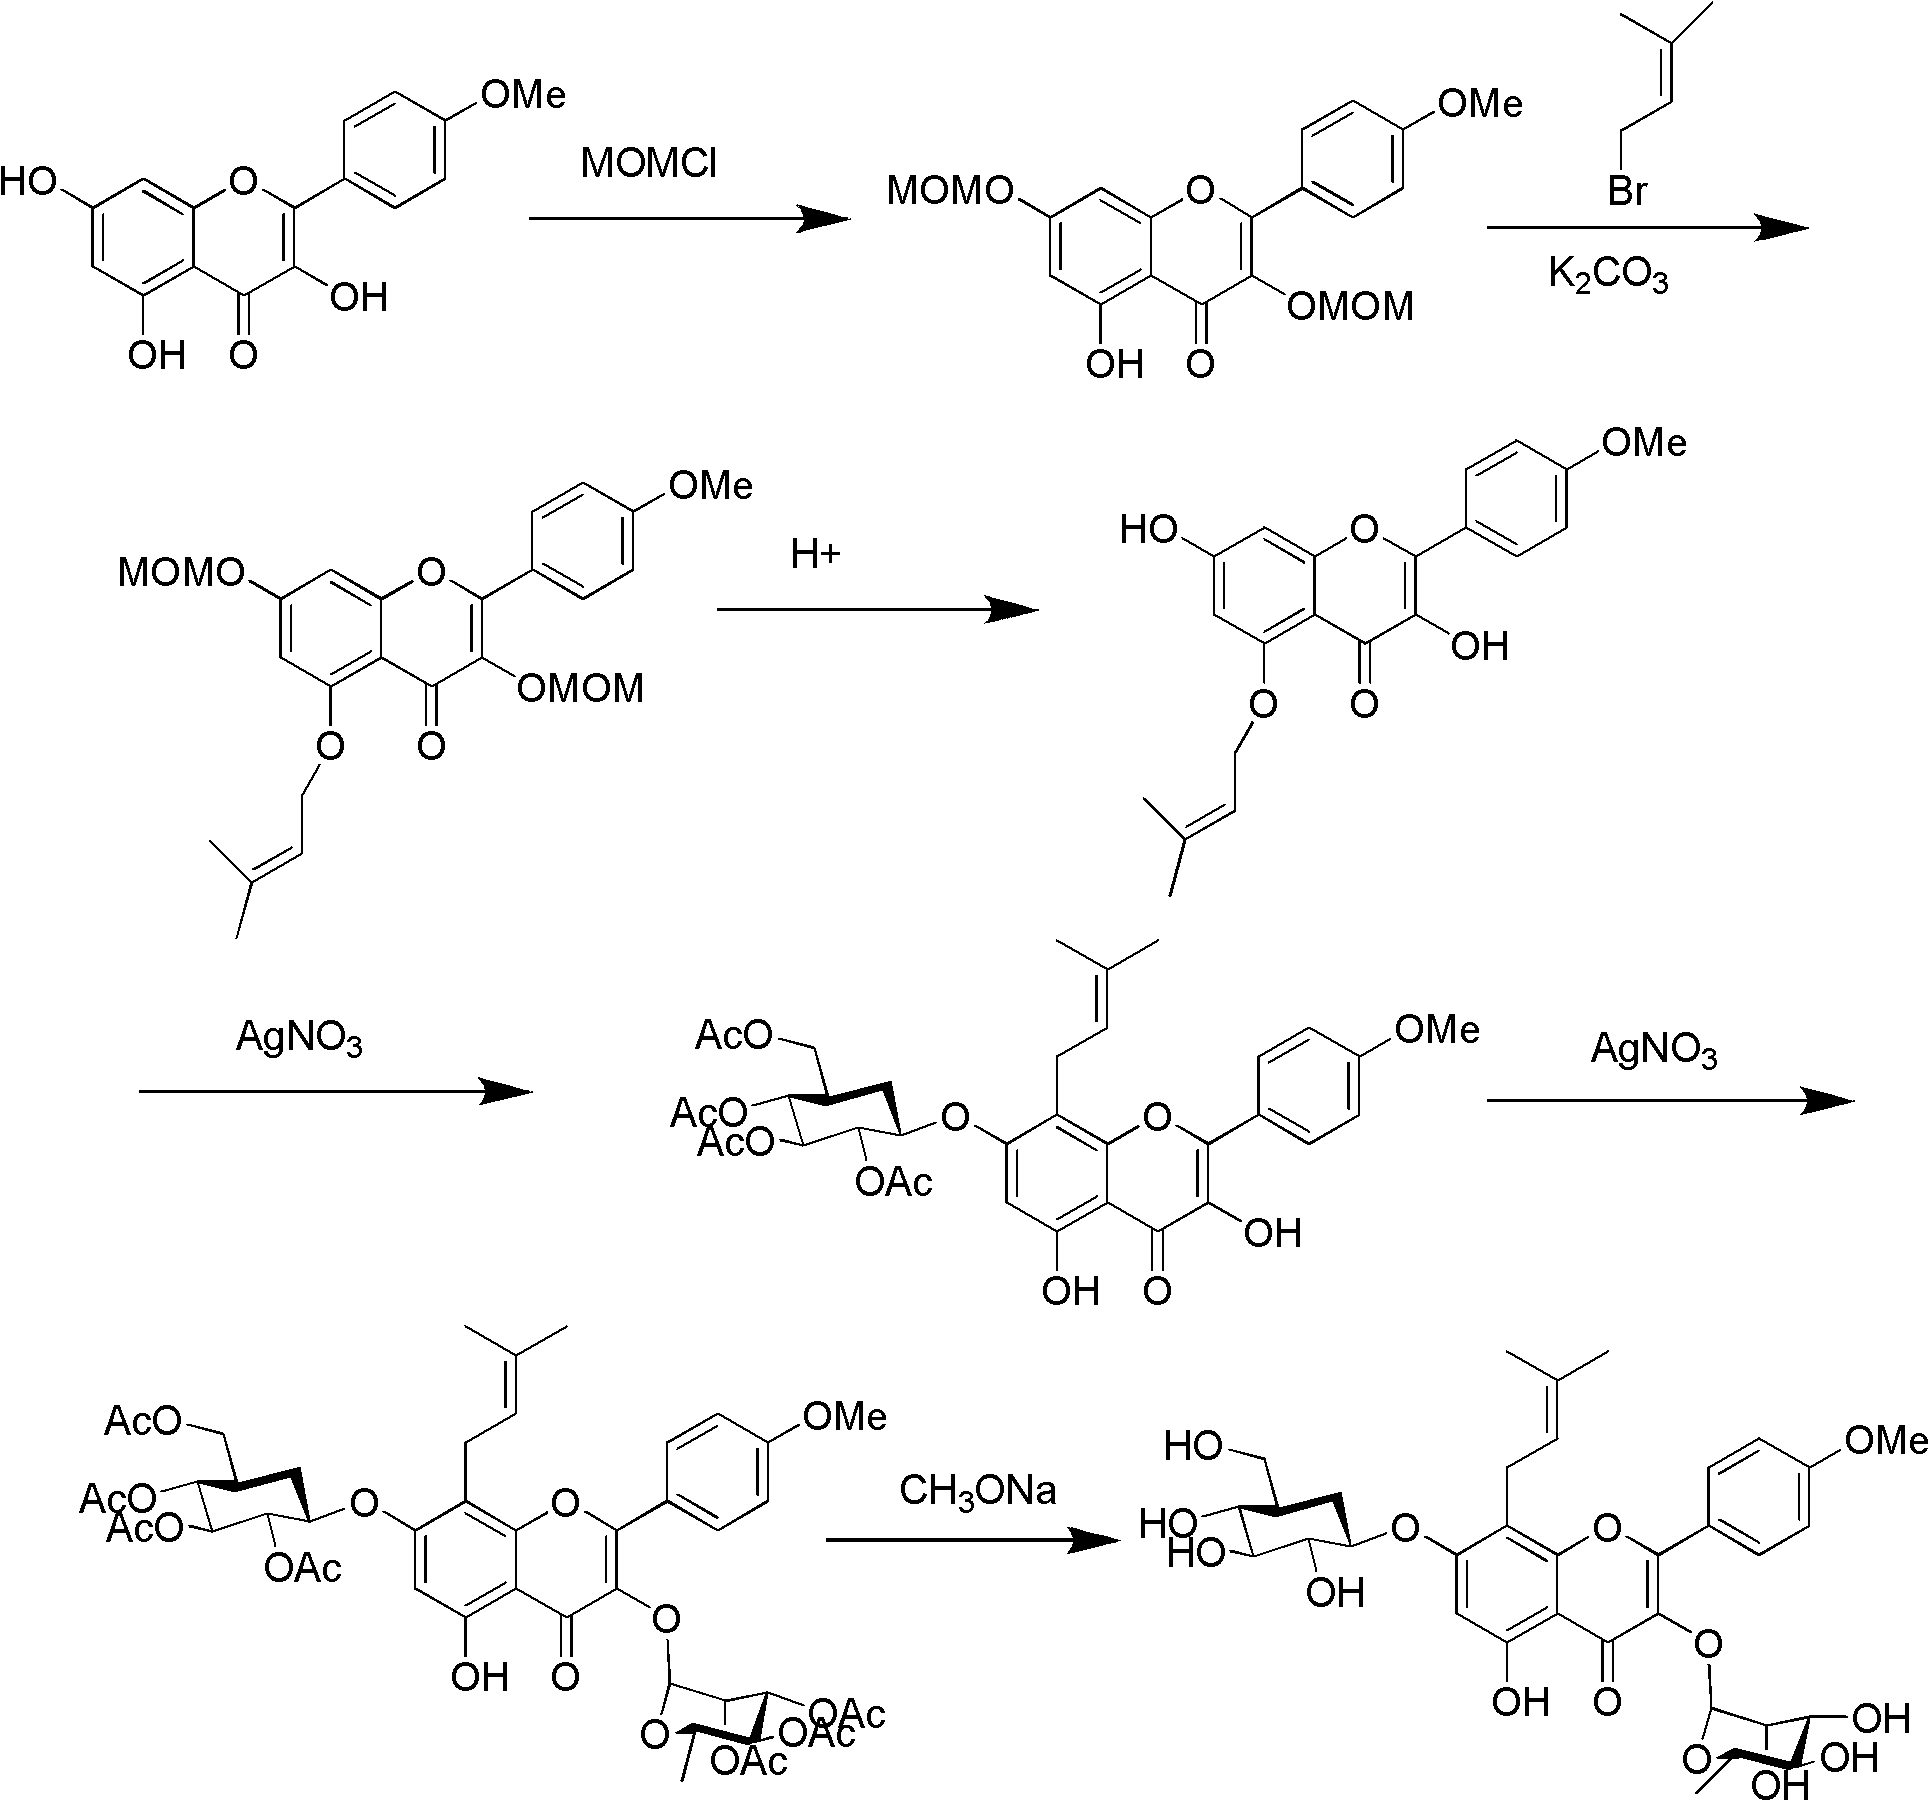 Method for synthesizing icariin by glucosidation of dehydrated epimedium herb